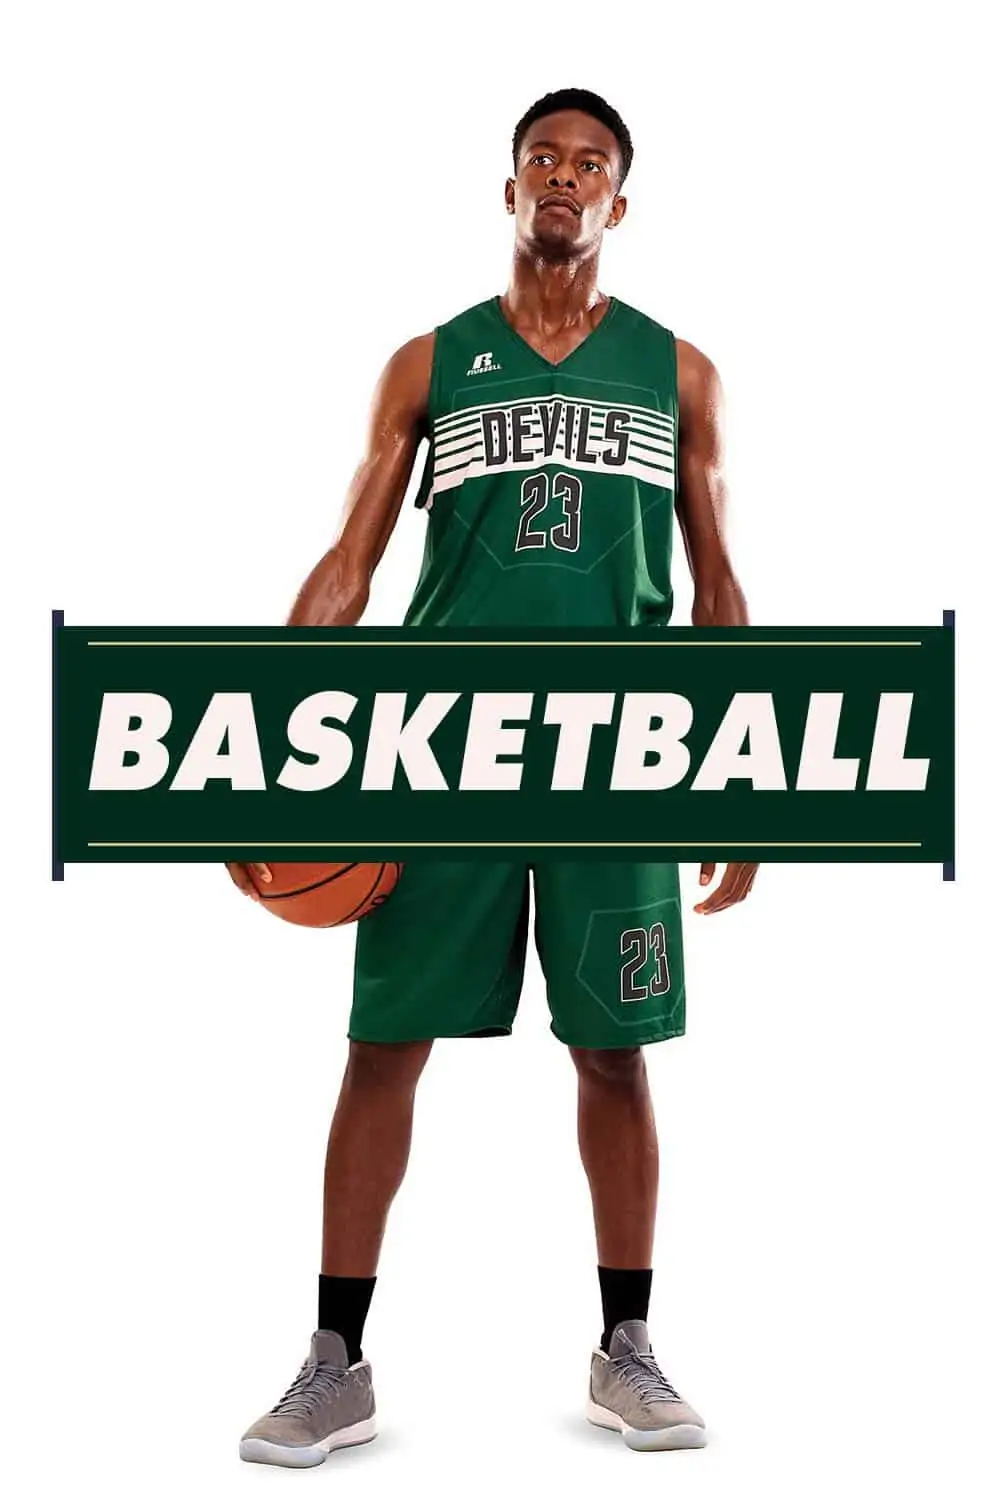 Basketball player image